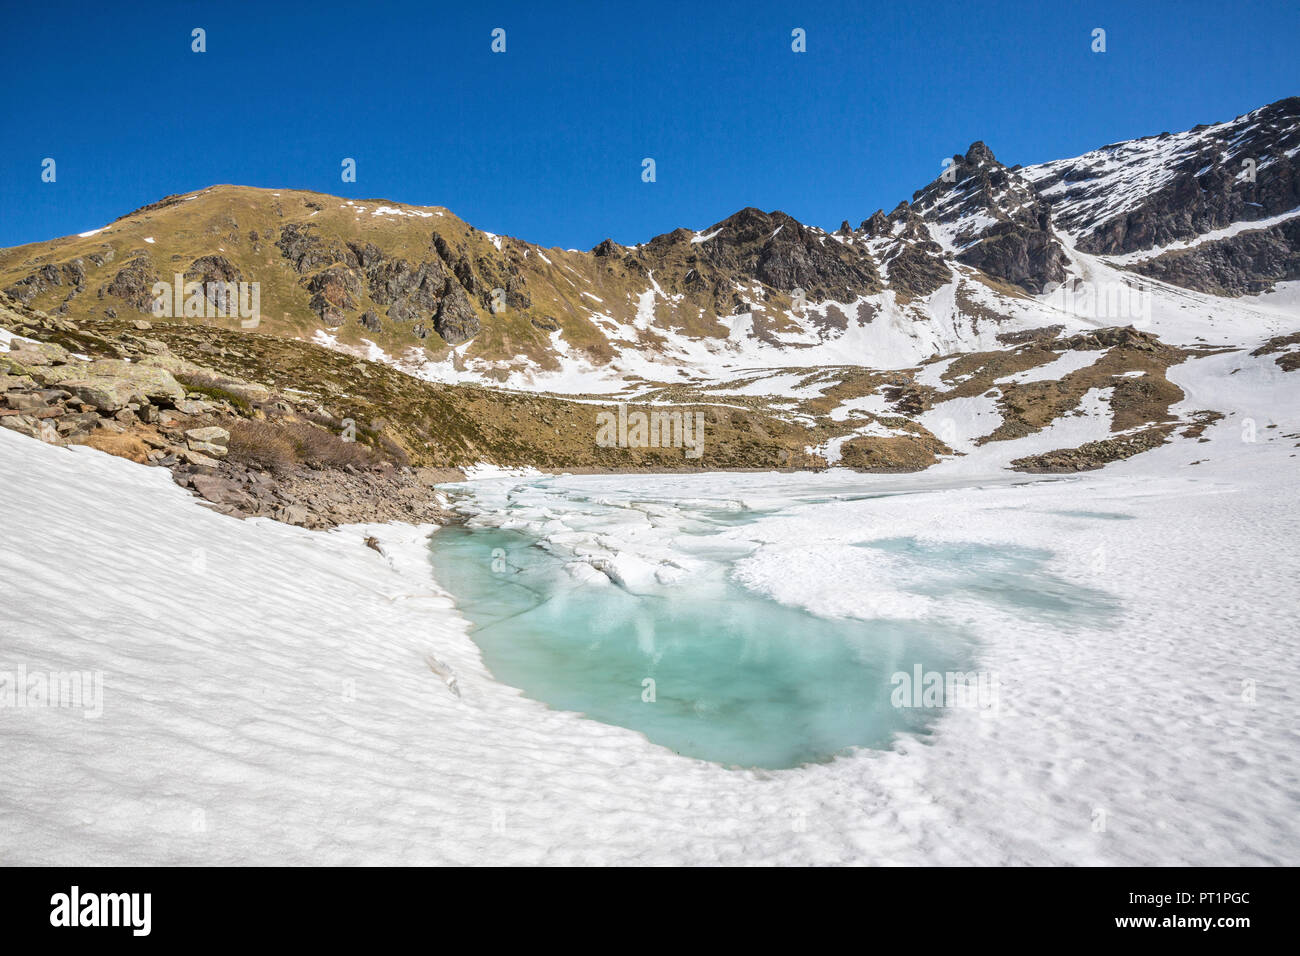 La molla del disgelo rivela le acque turchesi di Laj dal Teo valle di Poschiavo Canton Grigioni Svizzera Foto Stock